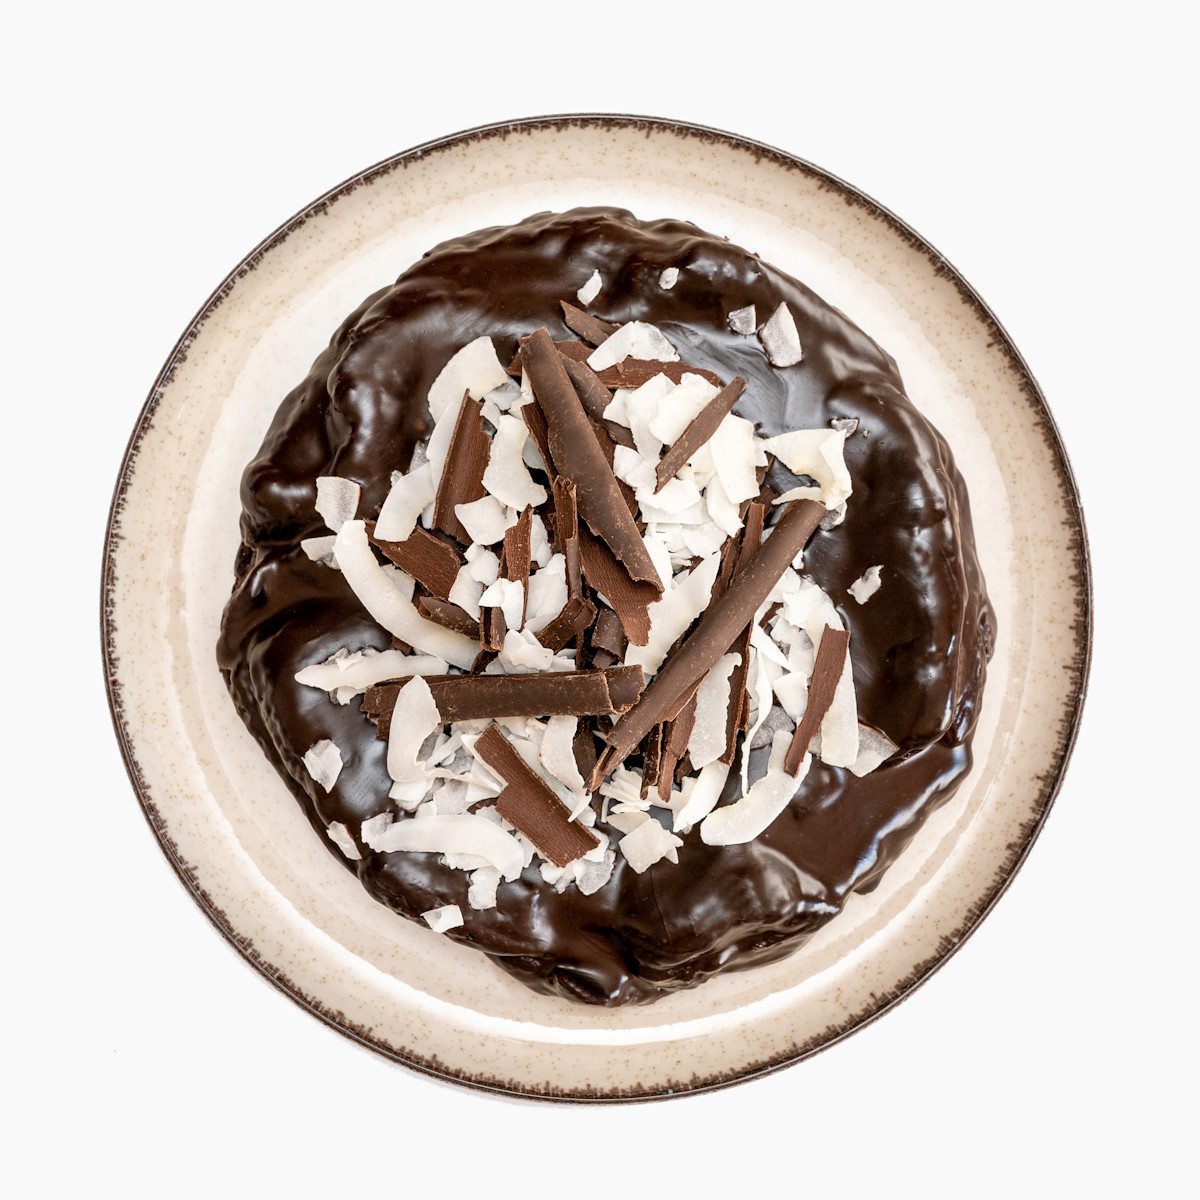 Čokodort Kokos s praženými kokosovými hoblinami a bohatou čokoládovou ganache na keramickém talíři